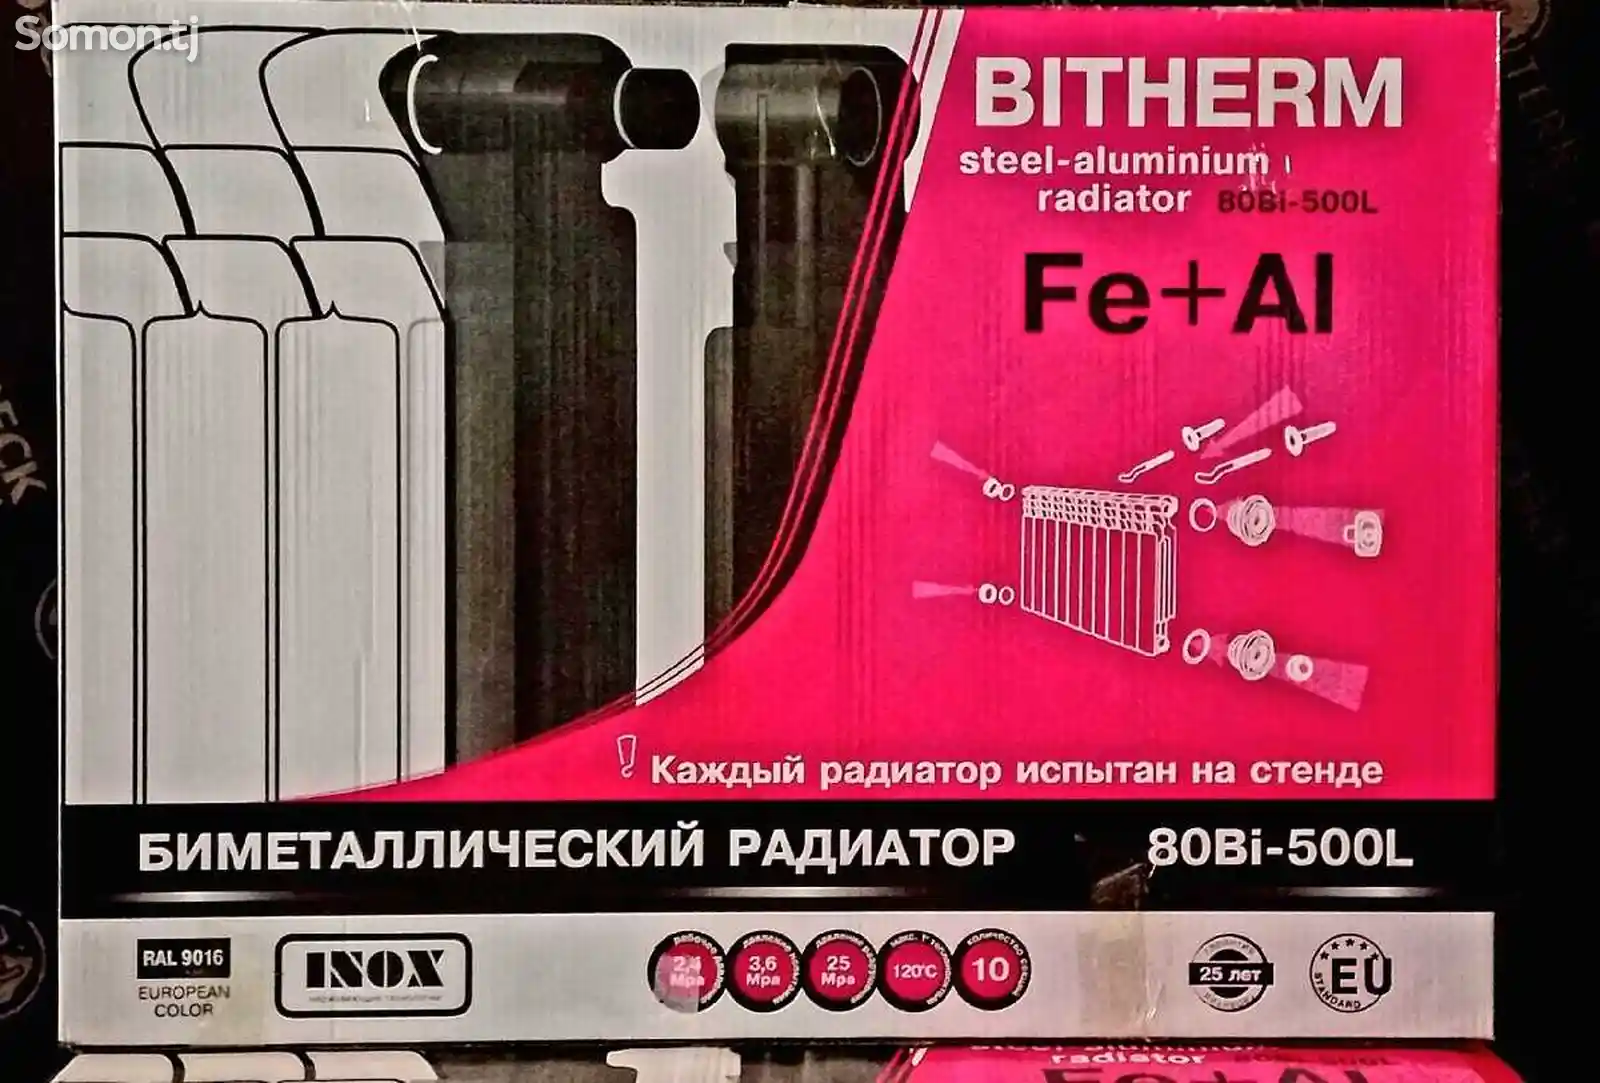 Радиатор Bitherm-6